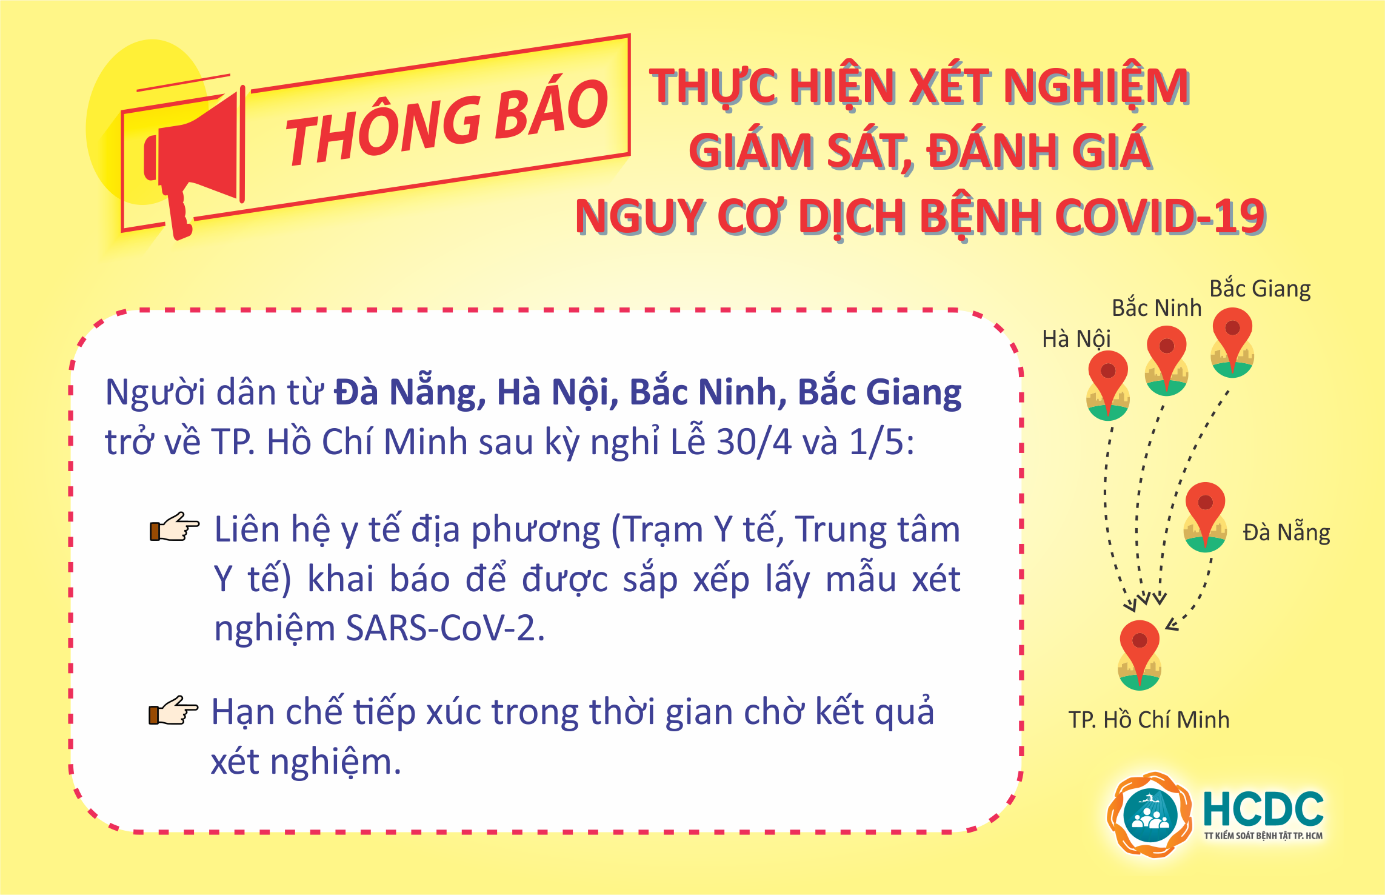 Thông báo của HCDC về việc lấy mẫu xét nghiệm toàn bộ người về từ Đà Nẵng và các tỉnh phía Bắc có dịch. Ảnh: HCDC